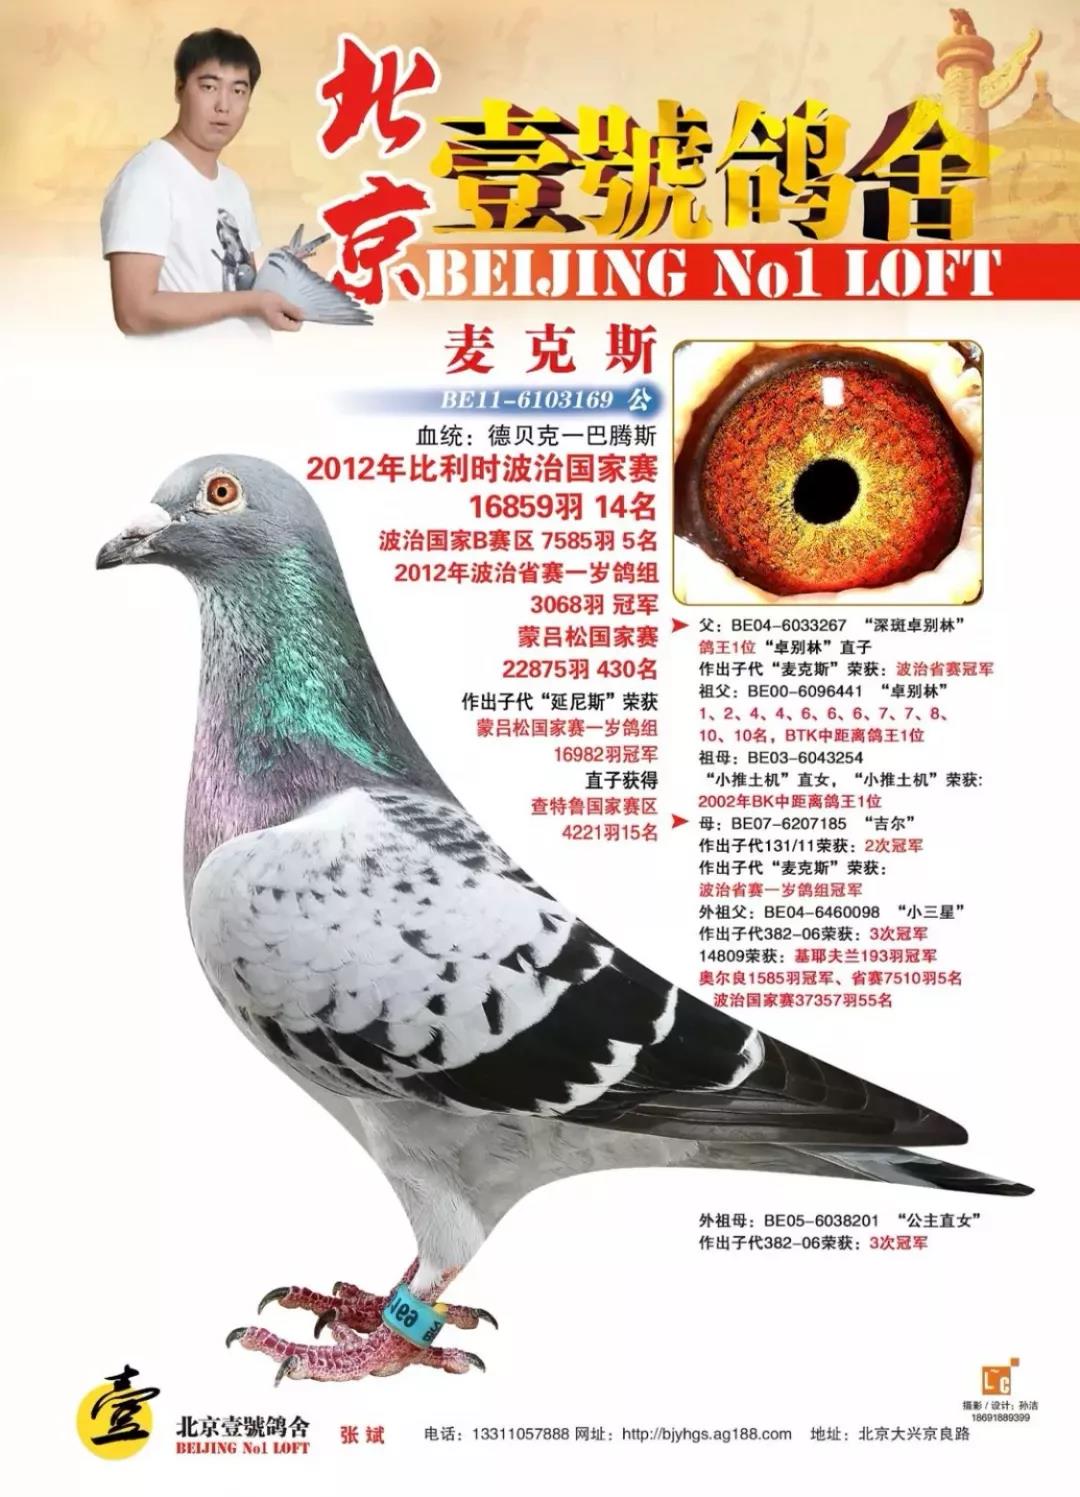 中国金山鸽业,金山鸽业38只种鸽图片 - 伤感说说吧